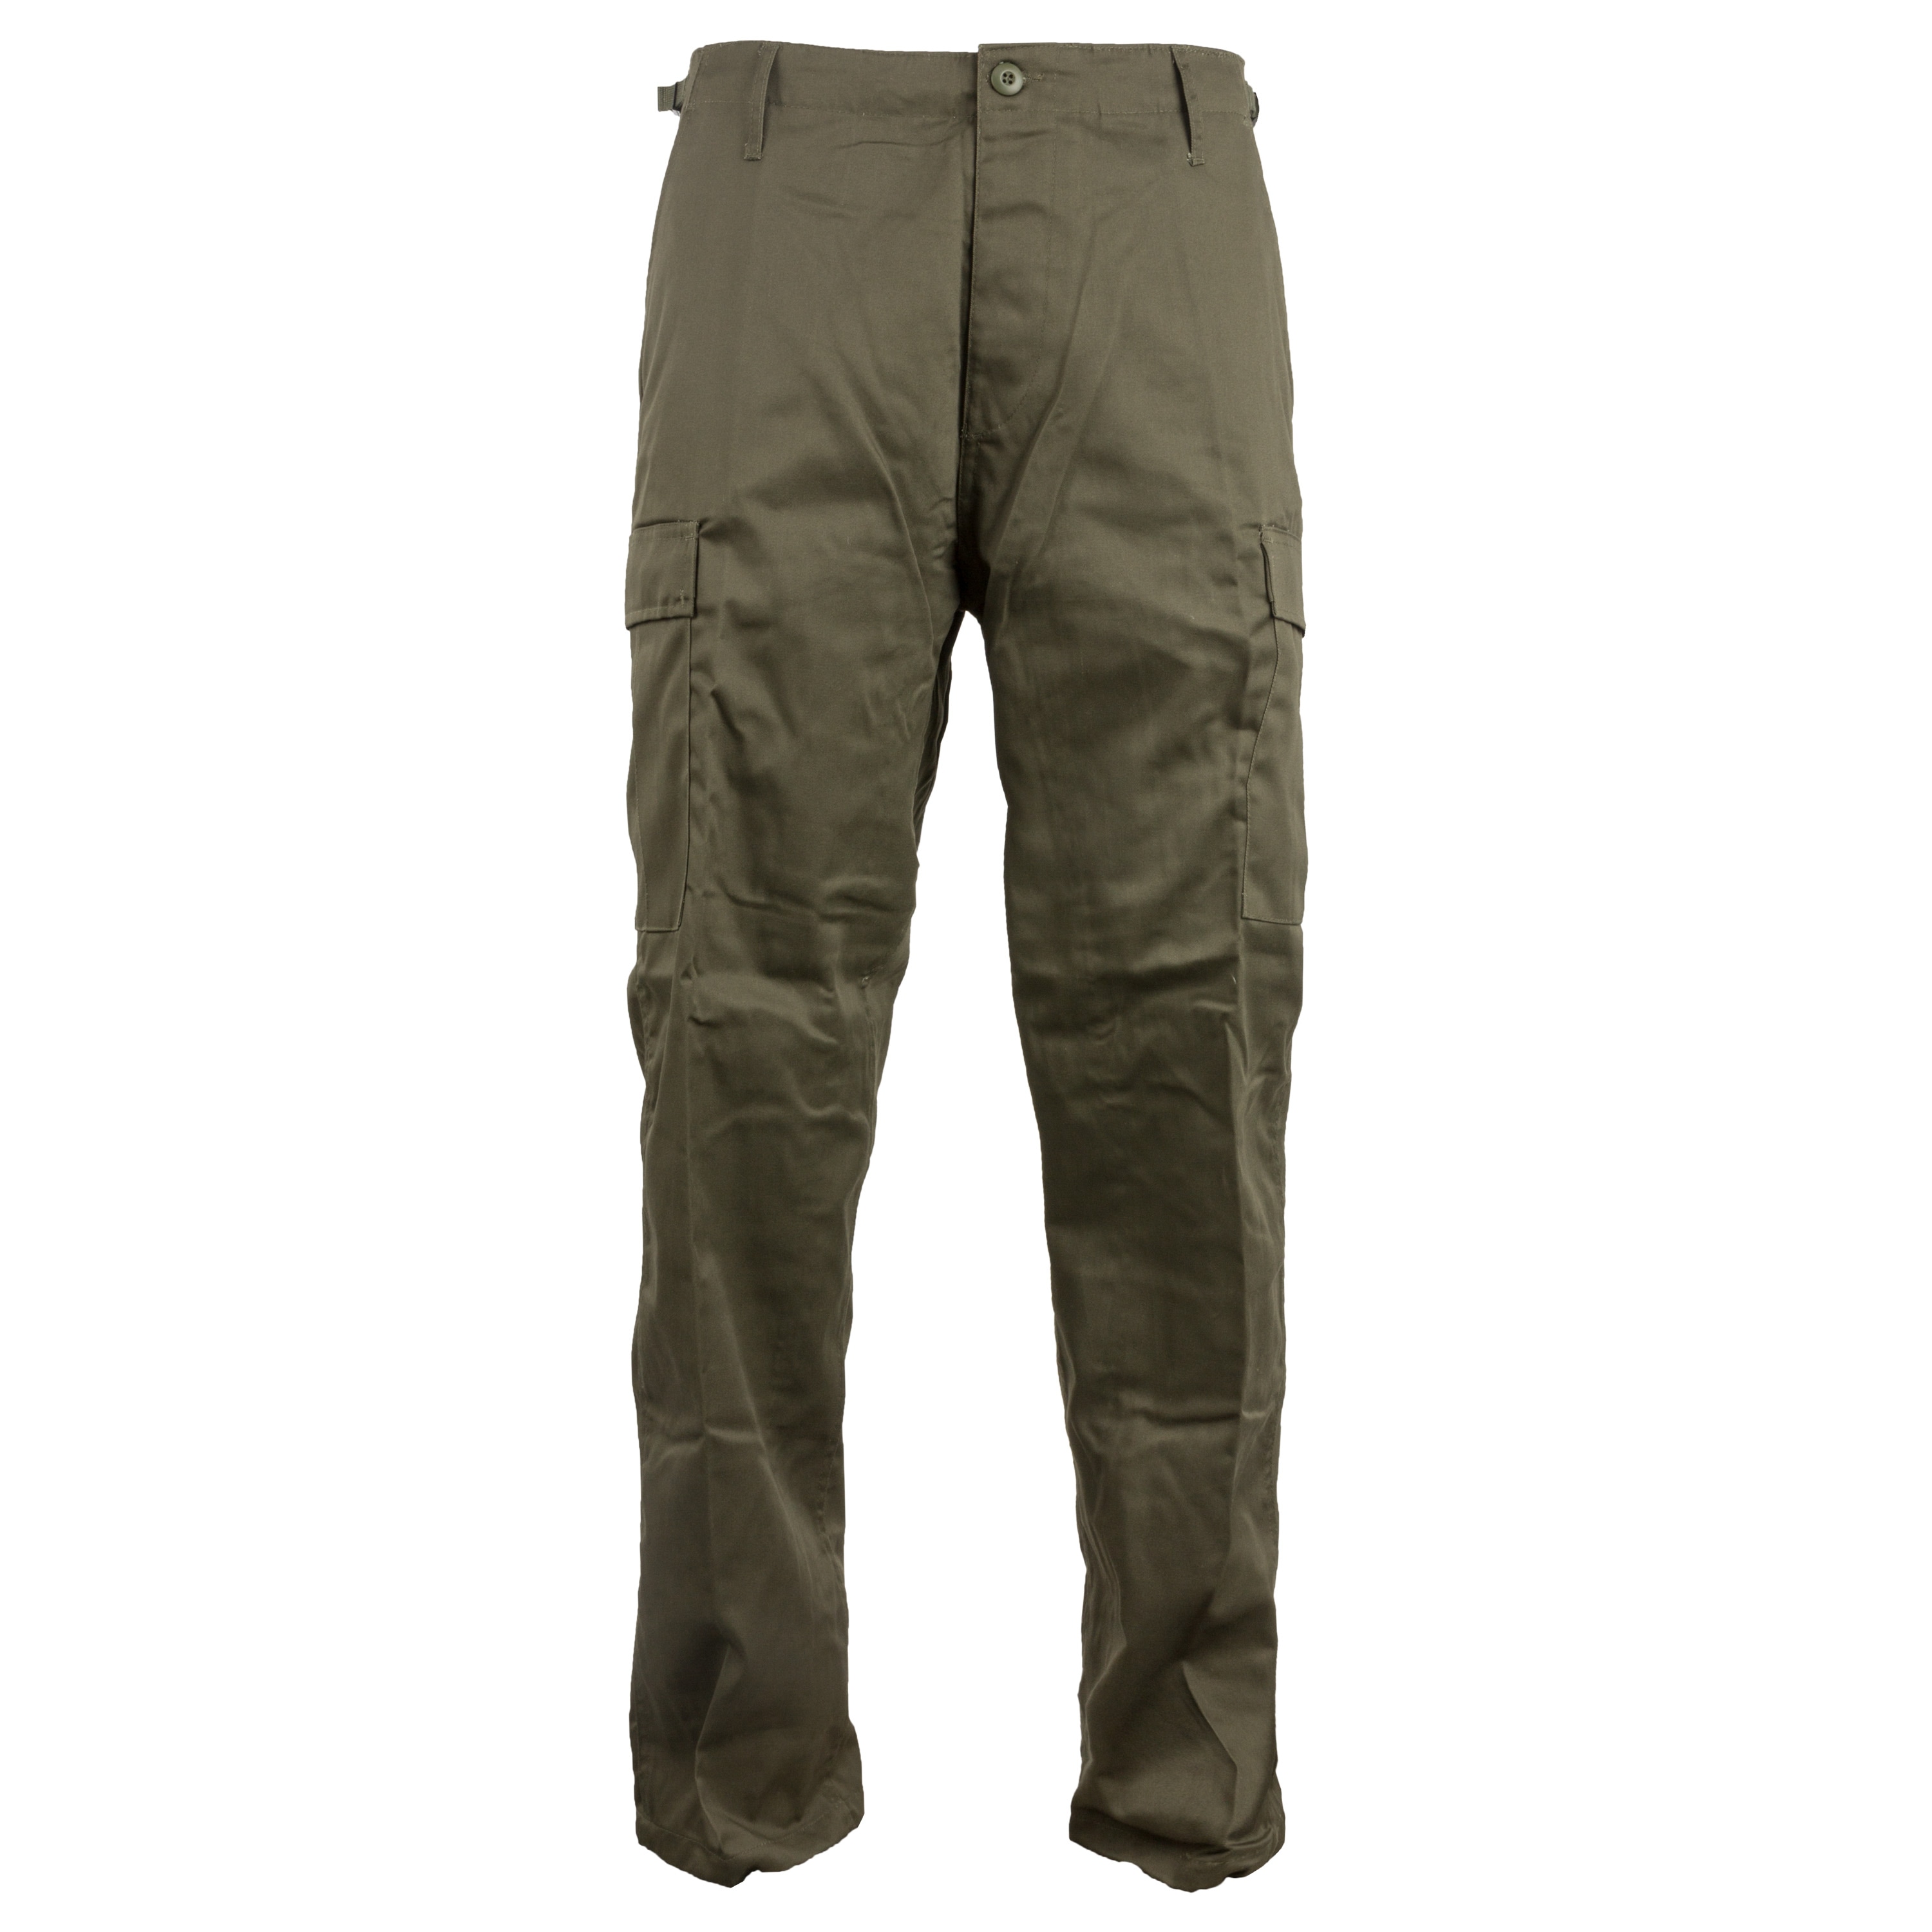 Ranger Pants olive | Ranger Pants olive | Pants | Trousers | Men | Clothing